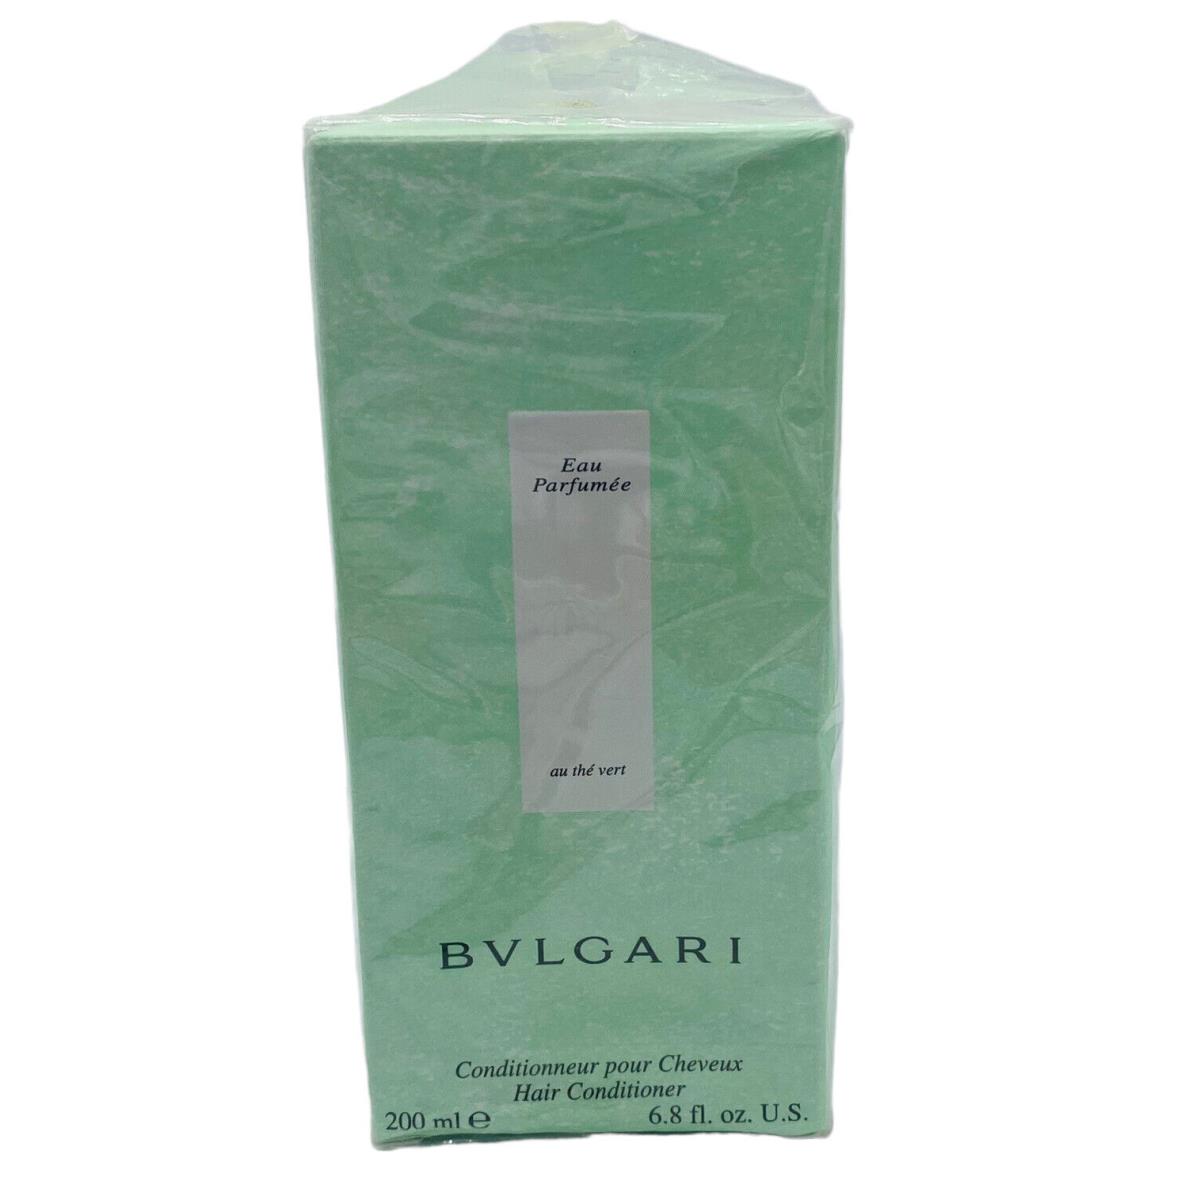 Bvlgari Eau Parfumee AU The Vert Hair Conditioner 200 ML/6.8 Fl.oz. Bad Box